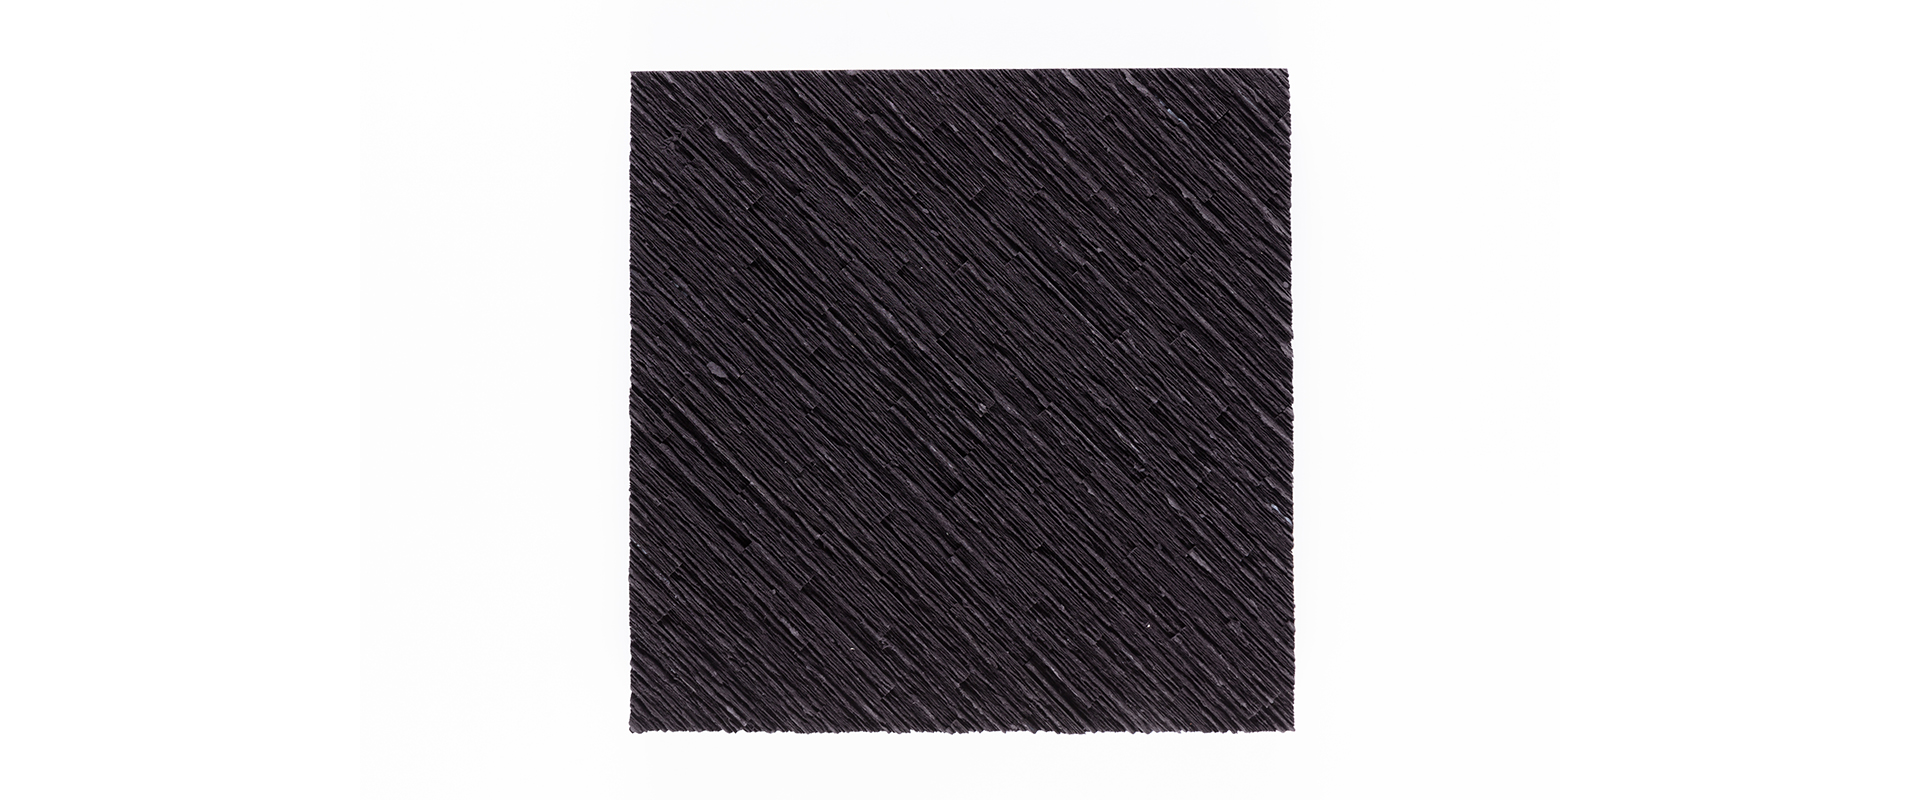 Ohne Titel (#121) - 2021, MDF schwarz, gebrochen, geleimt, 33 x 33 x 4,5 cm